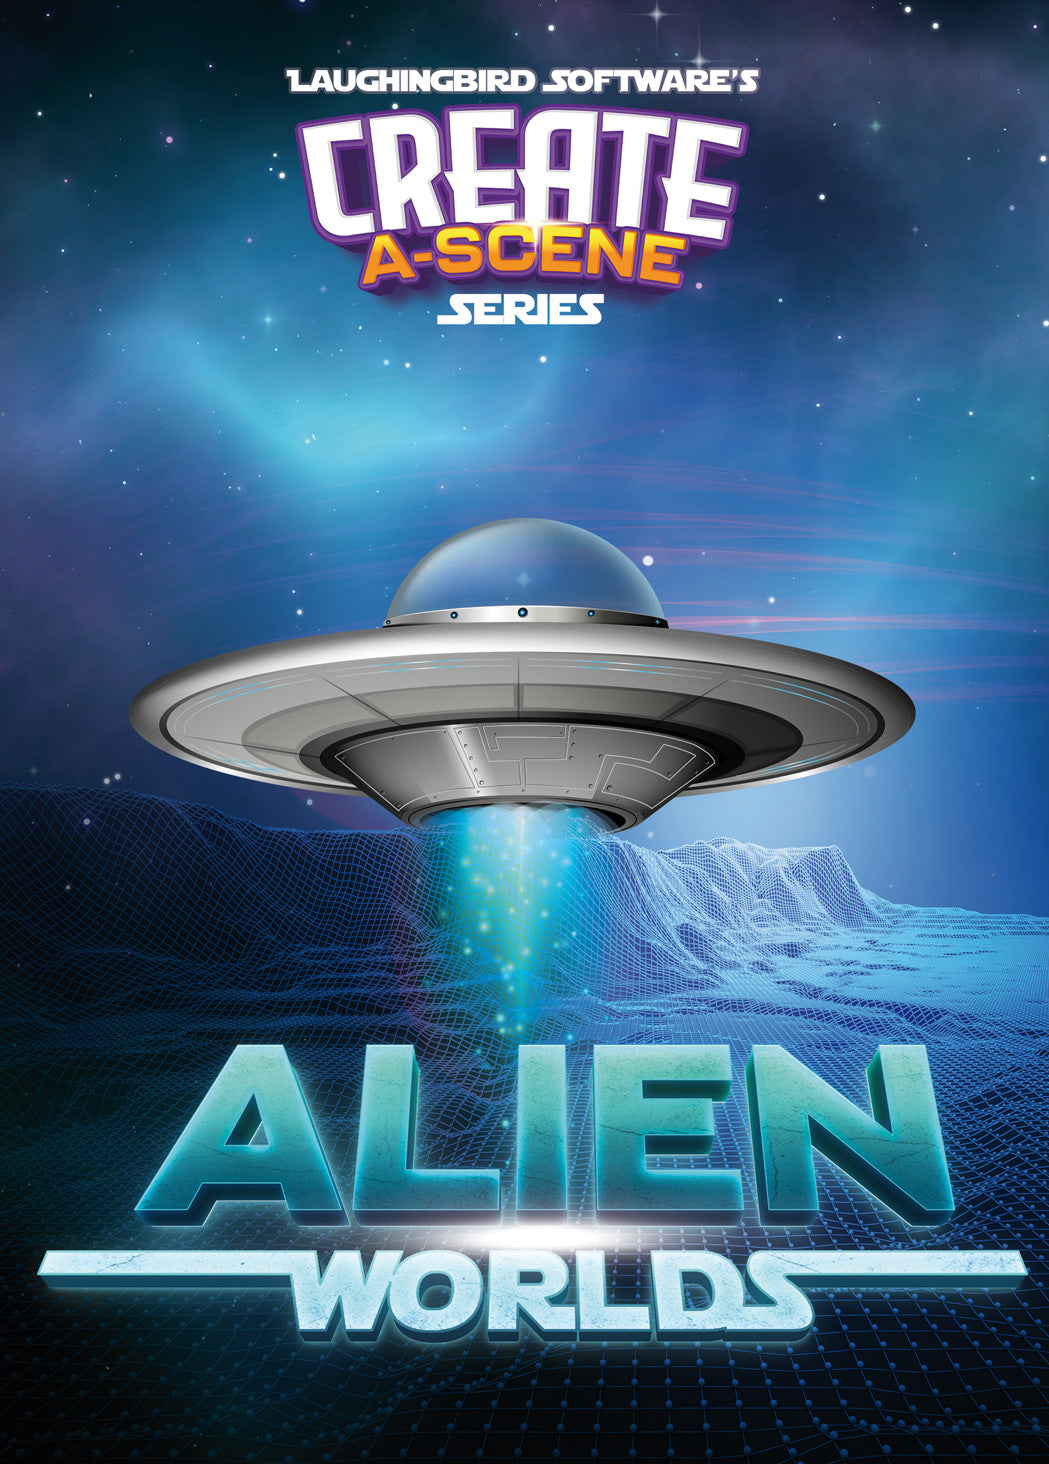 Create-A-Scene Alien Worlds